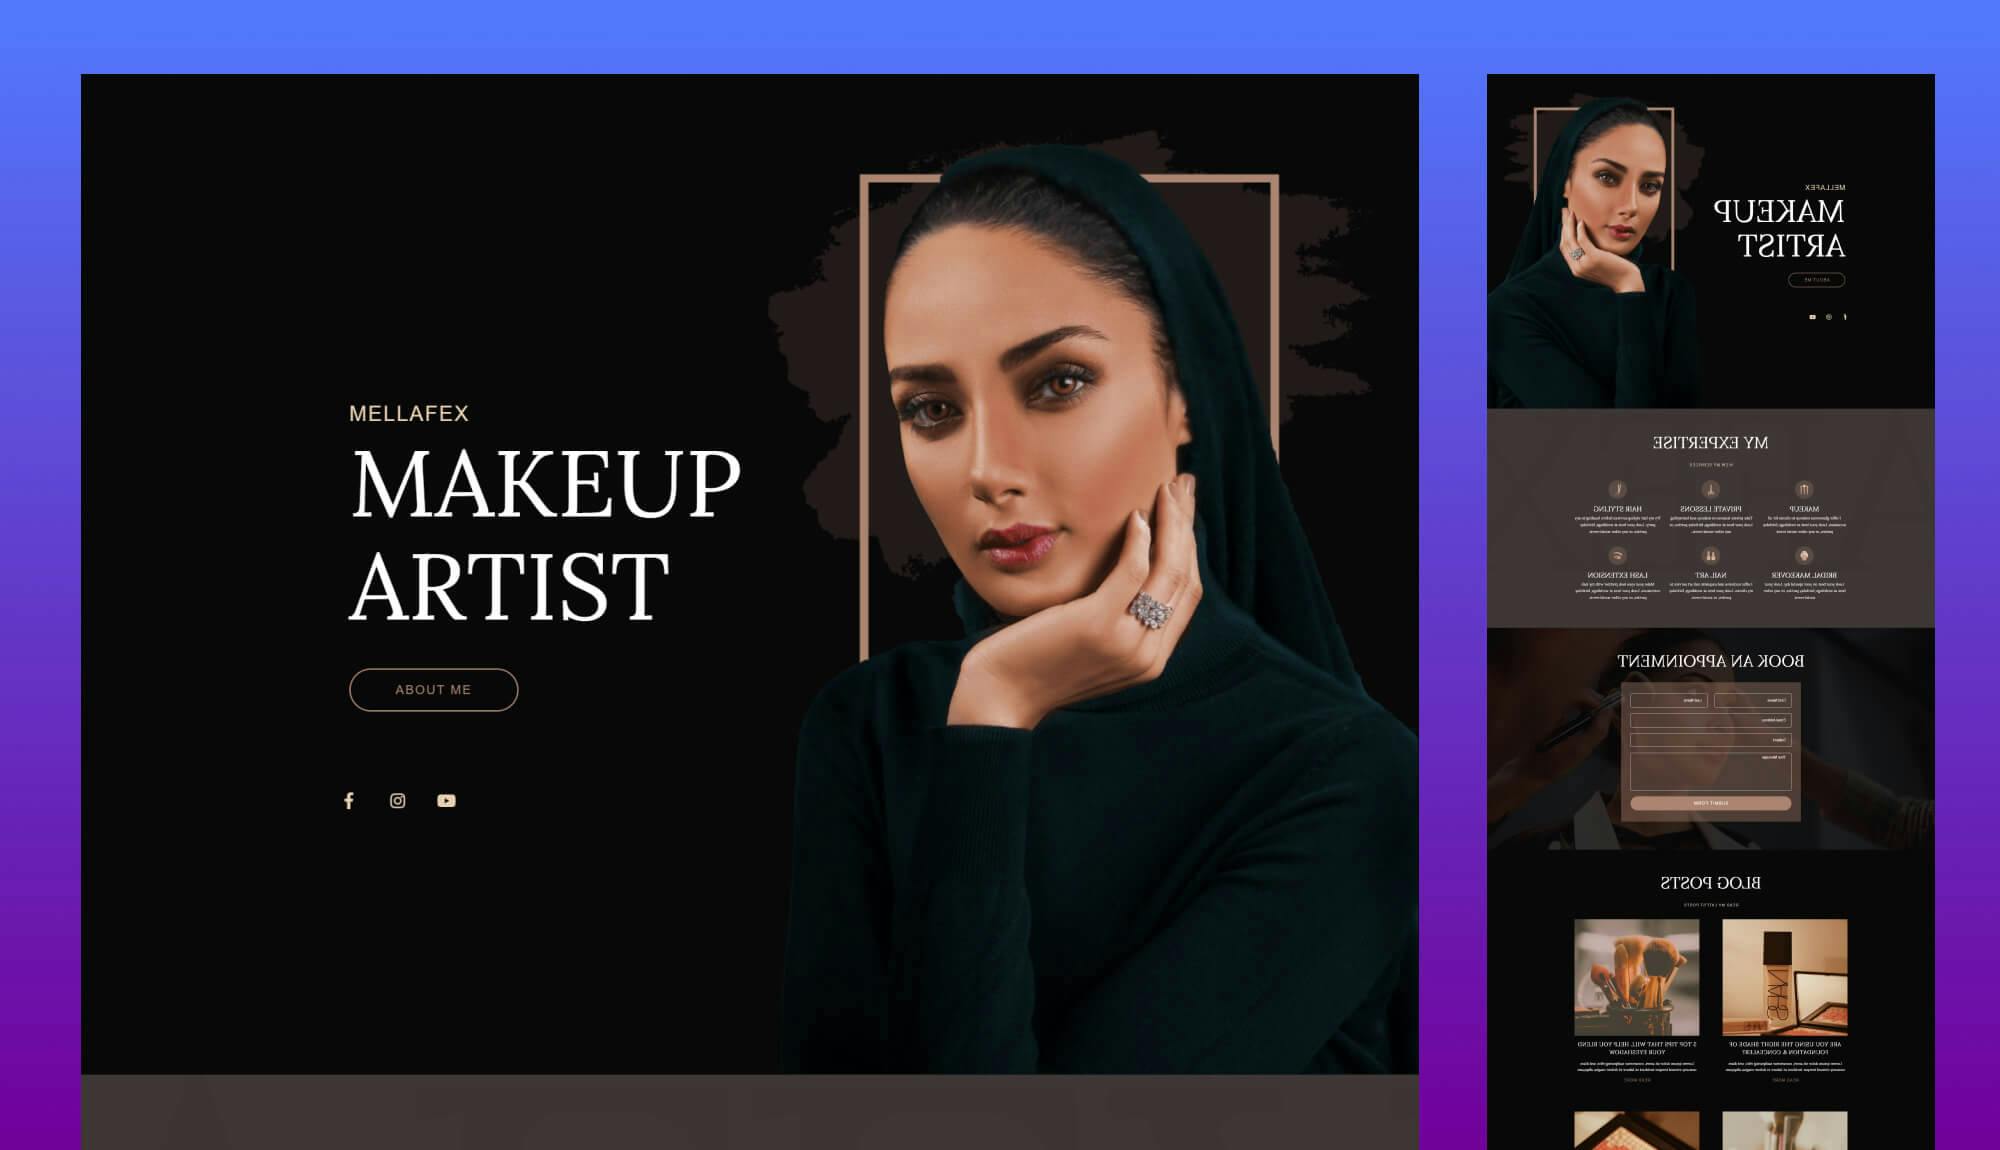 Mellafex - Makeup Artist Template Pack For Gutenberg Banner